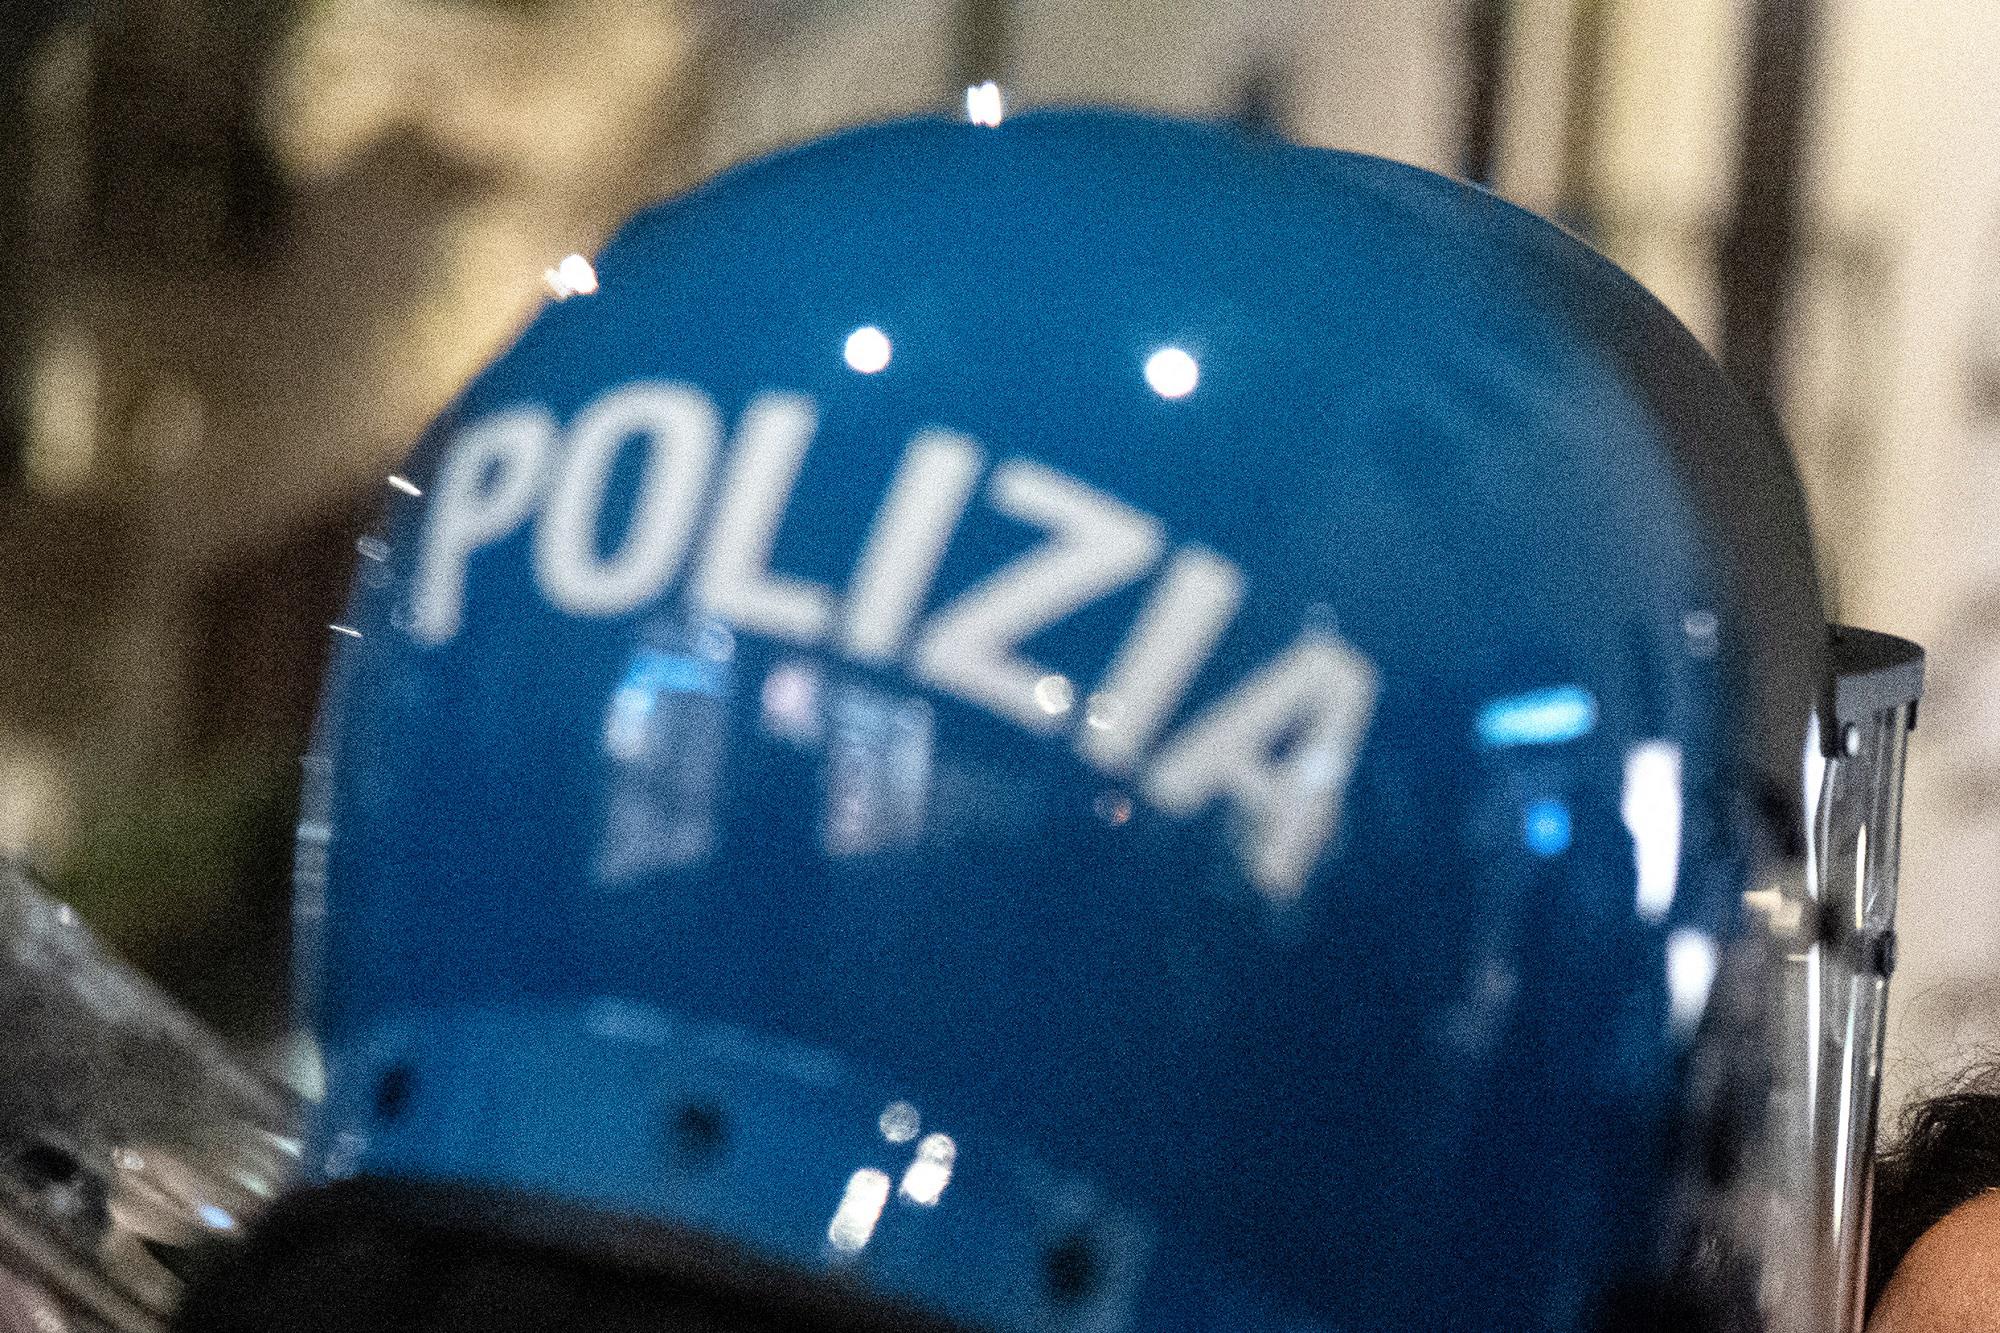 No Green pass Roma, denunciato agente ripreso mentre colpisce manifestante